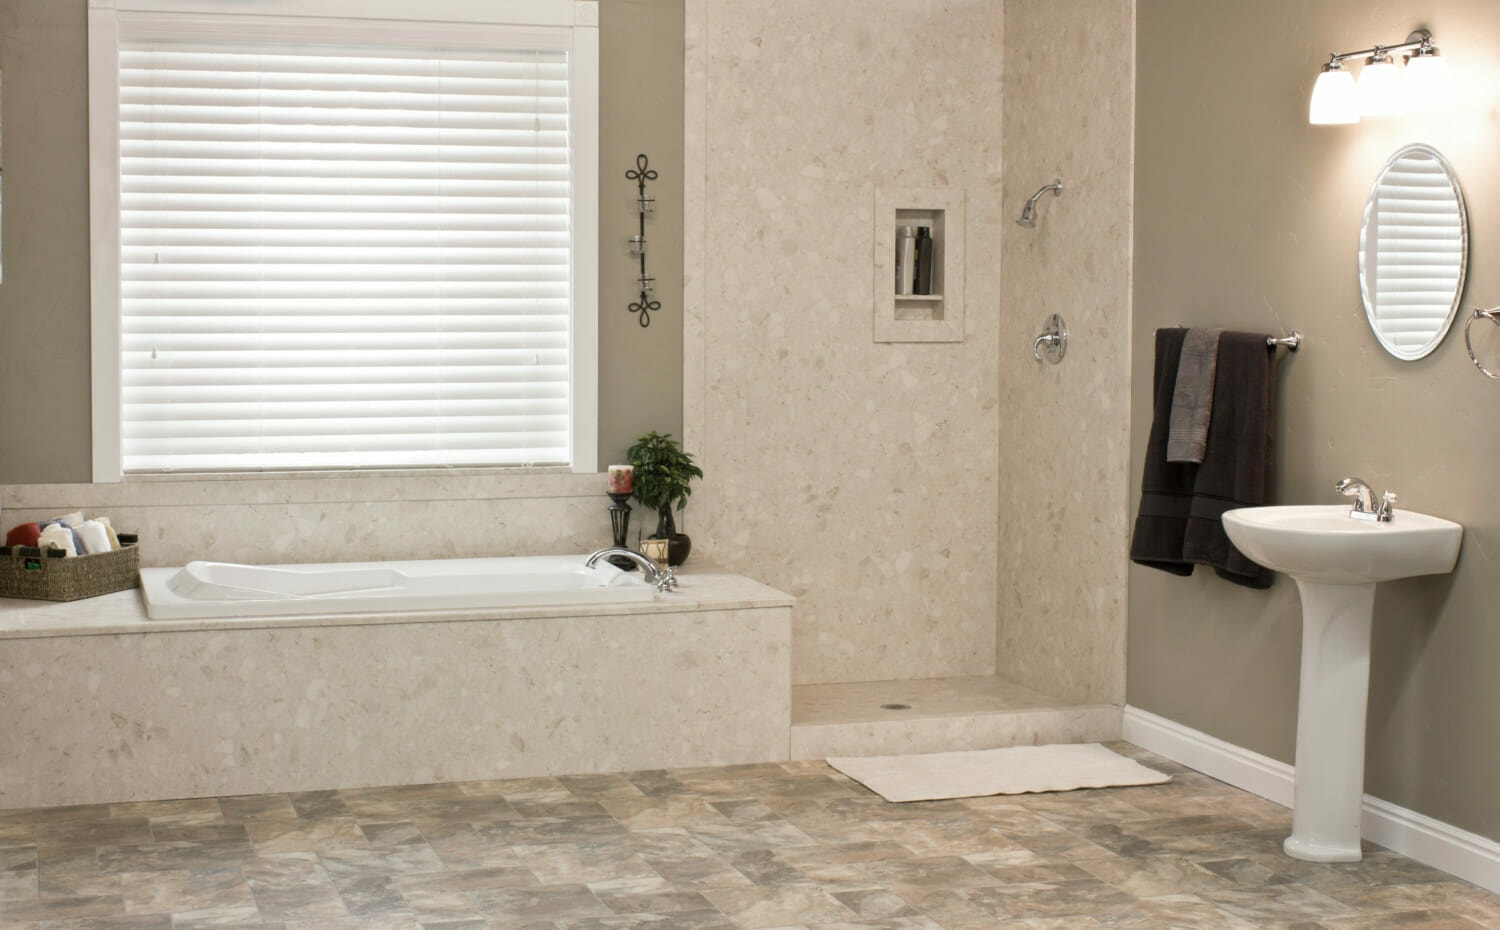 Five Star Bath Solutions of Warren Lifetime Warranty, Waterproof for life